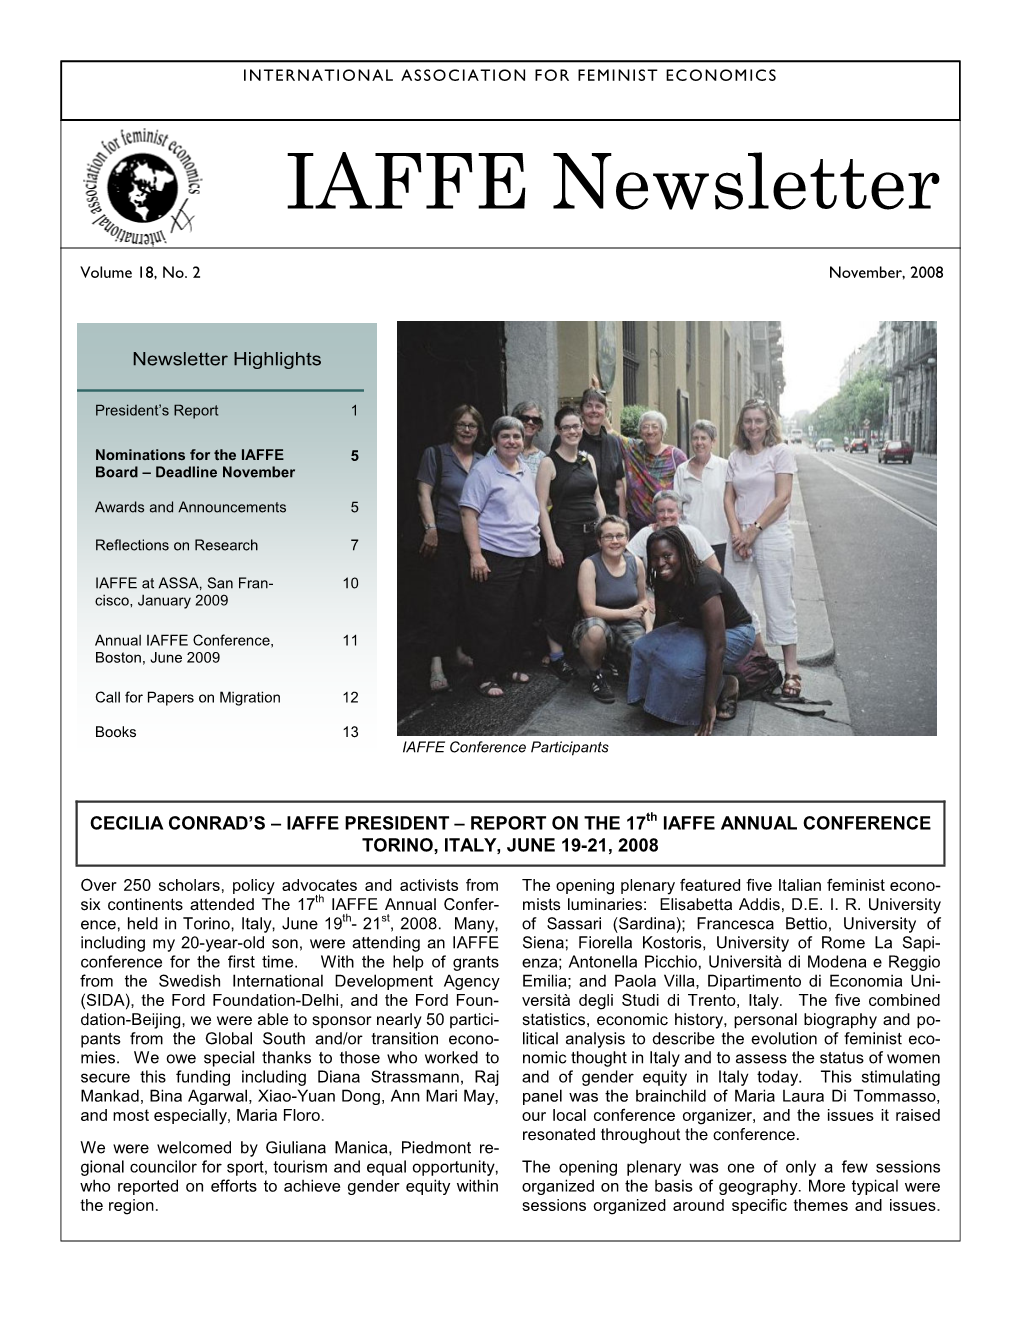 IAFFE Newsletter